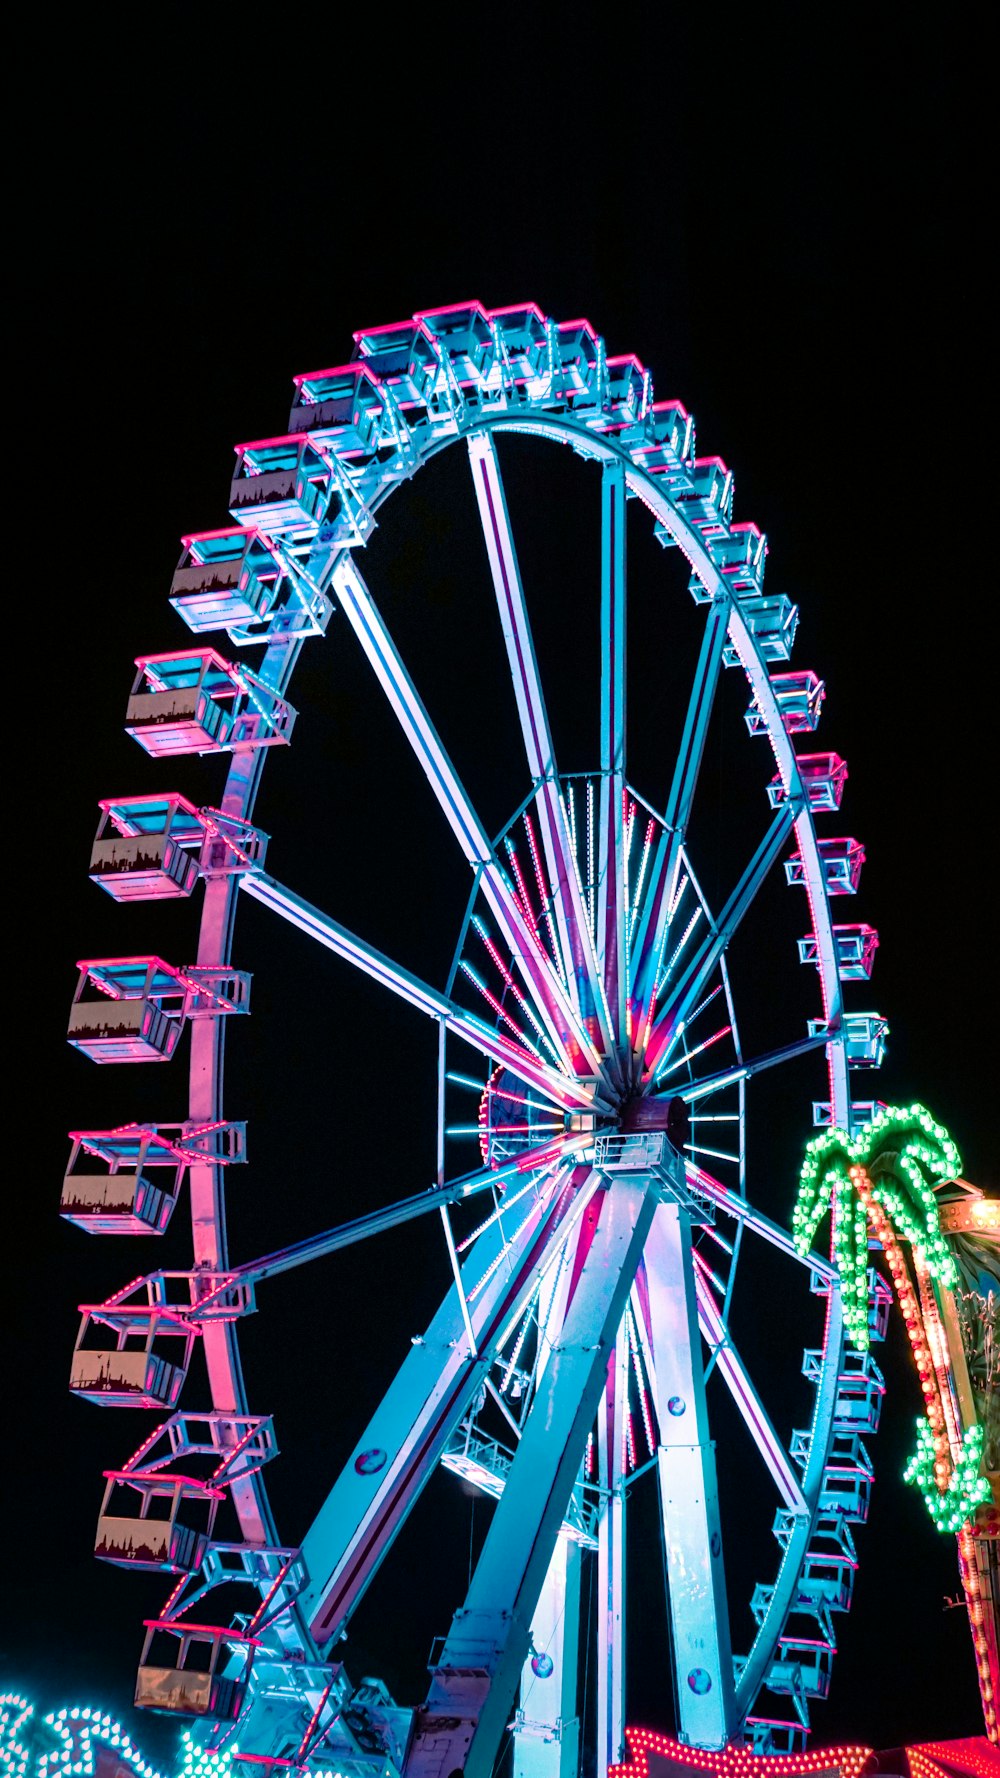 Nếu bạn đang muốn tìm kiếm bức ảnh mang chút cảm giác tươi mới và lãng mạn, thì hãy xem ngay bức hình Ferris Wheel chụp vào buổi đêm. Đây sẽ là lựa chọn hoàn hảo để trang trí màn hình điện thoại của bạn.